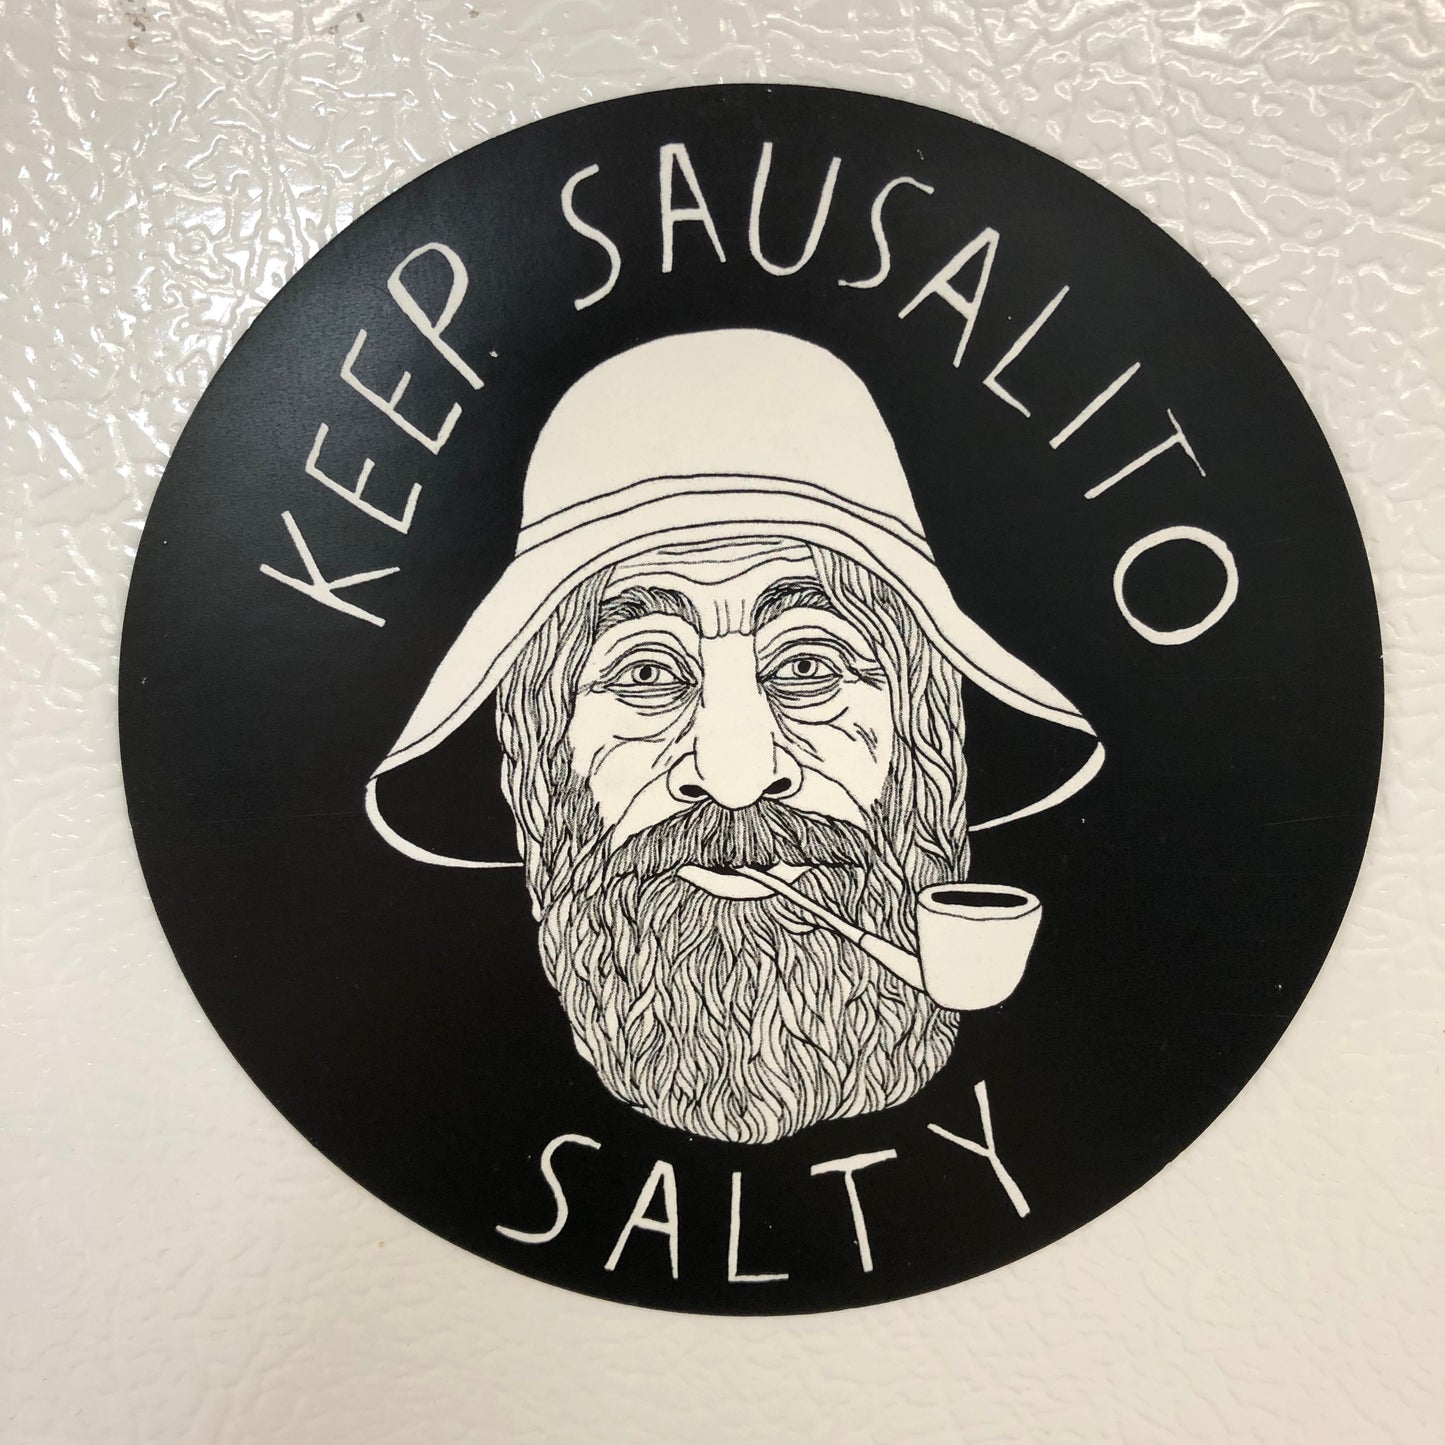 Keep Sausalito Salty Magnet 4"